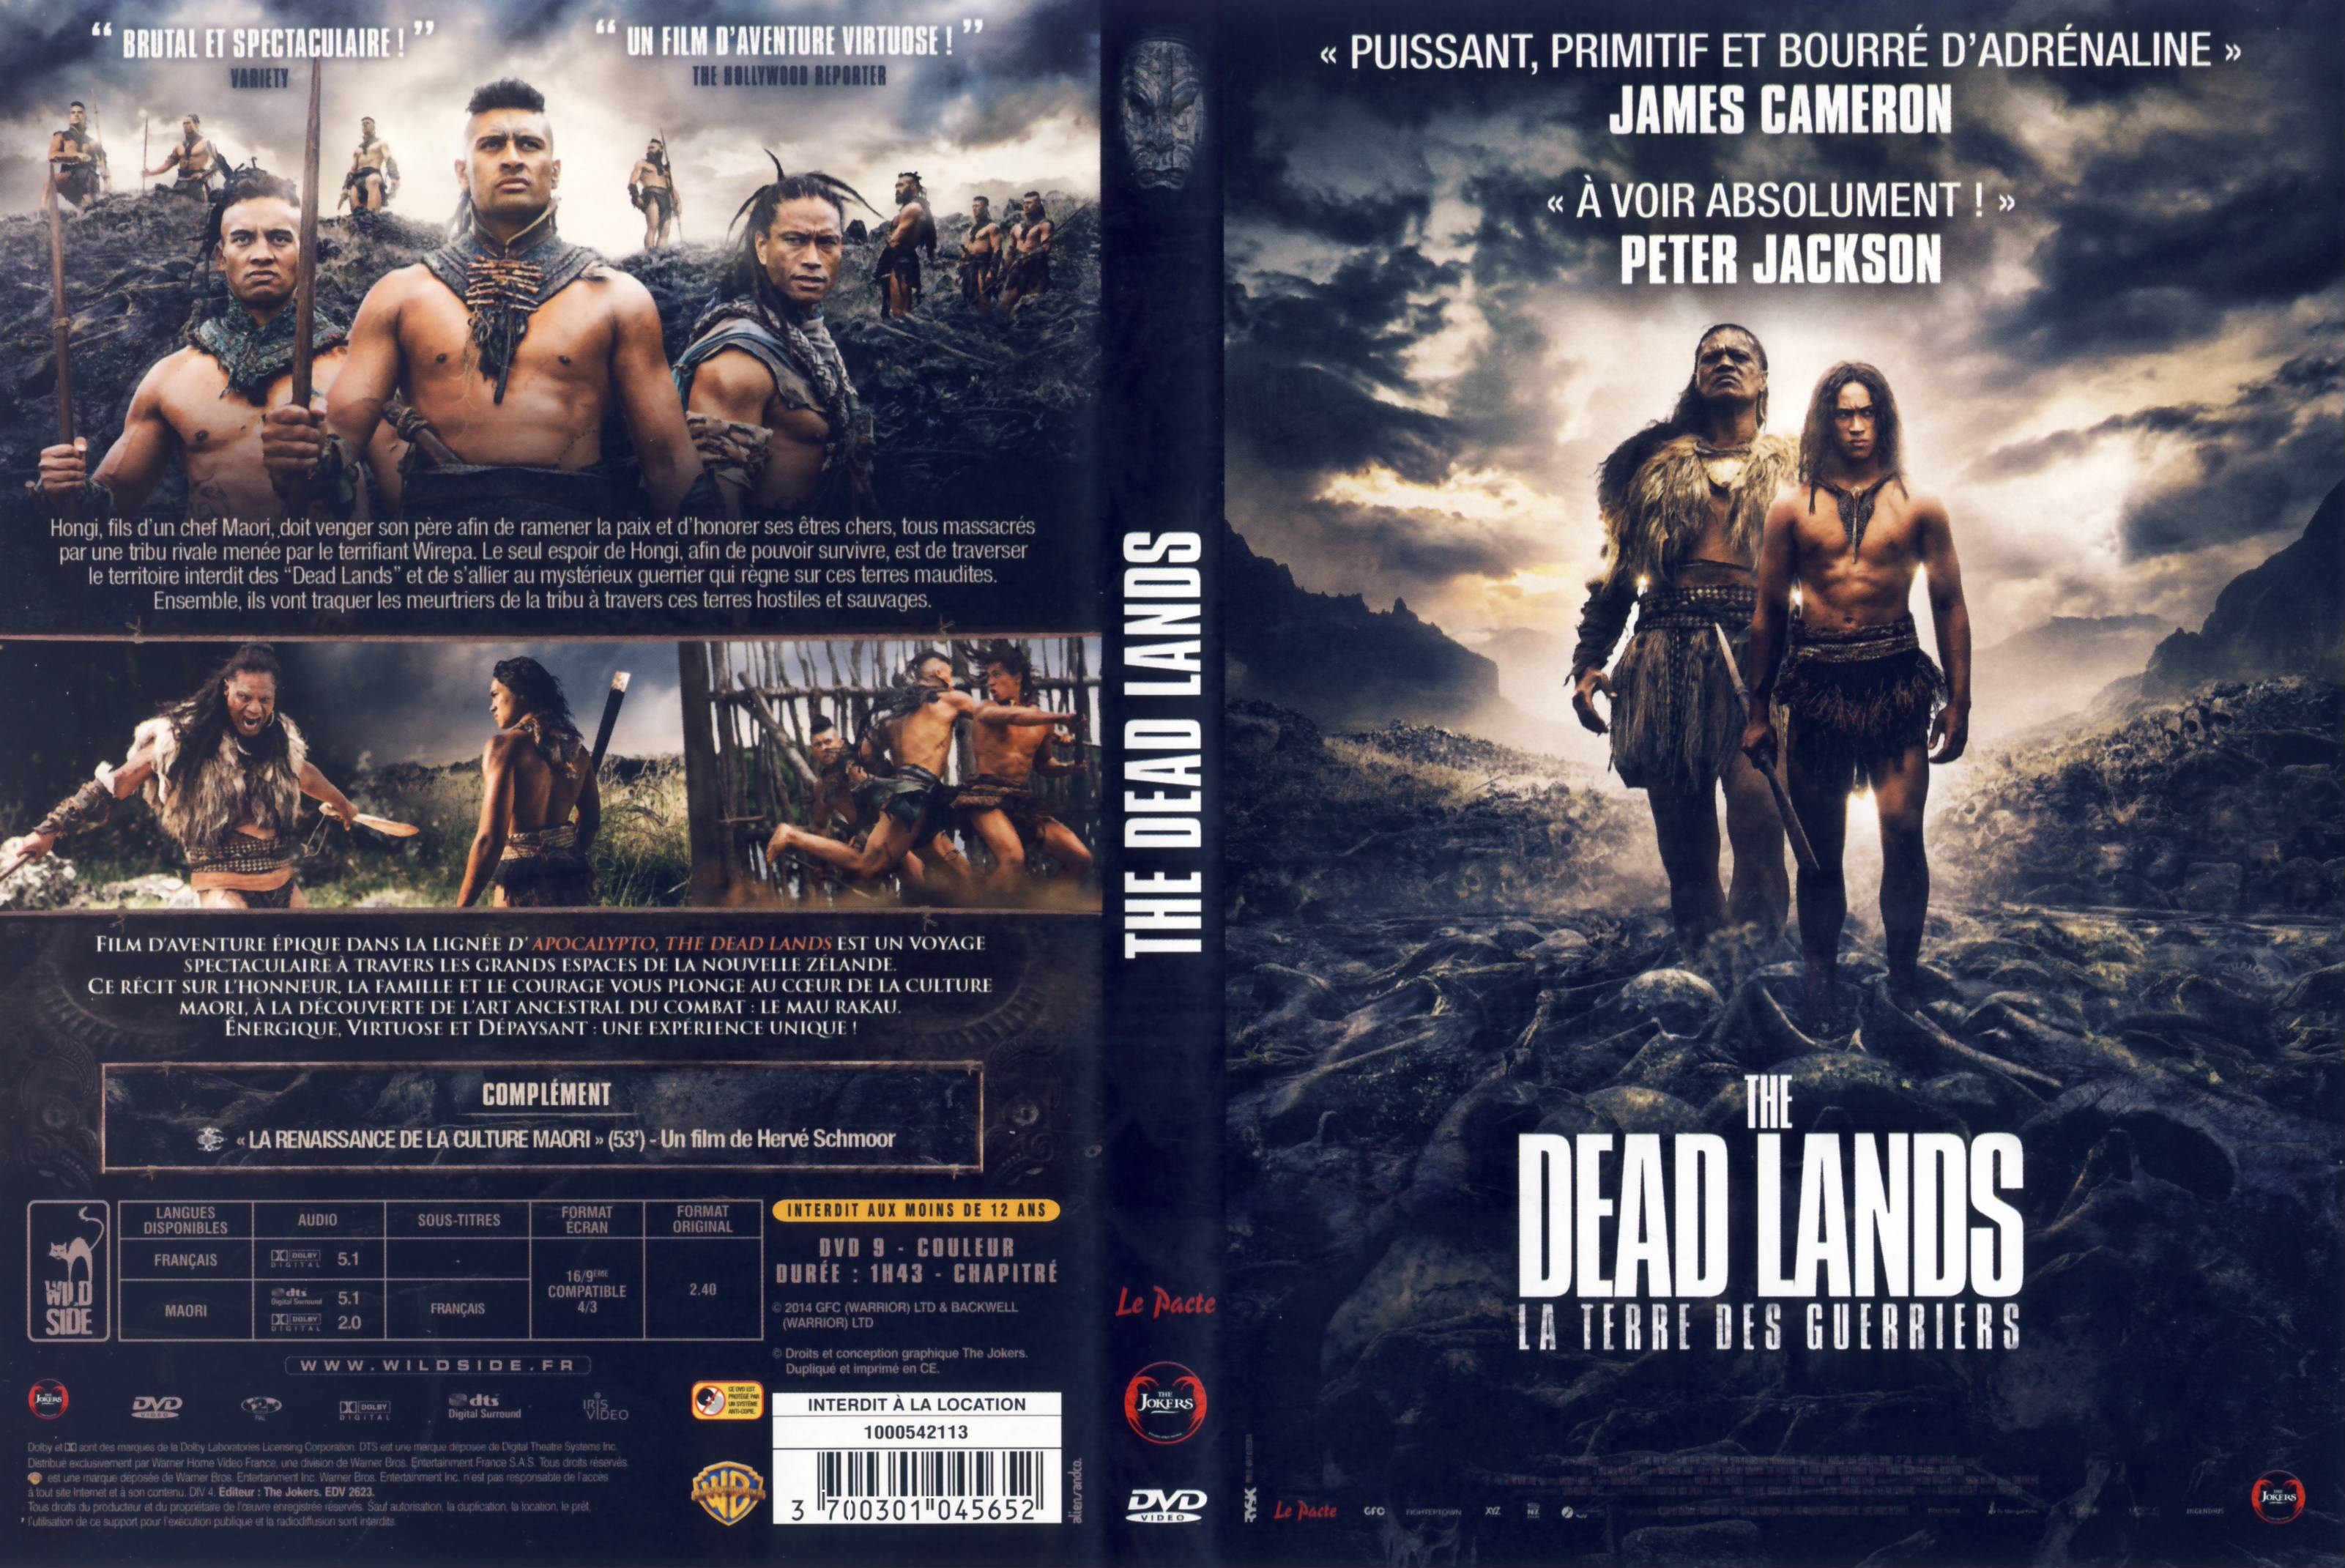 Jaquette DVD The Dead Lands